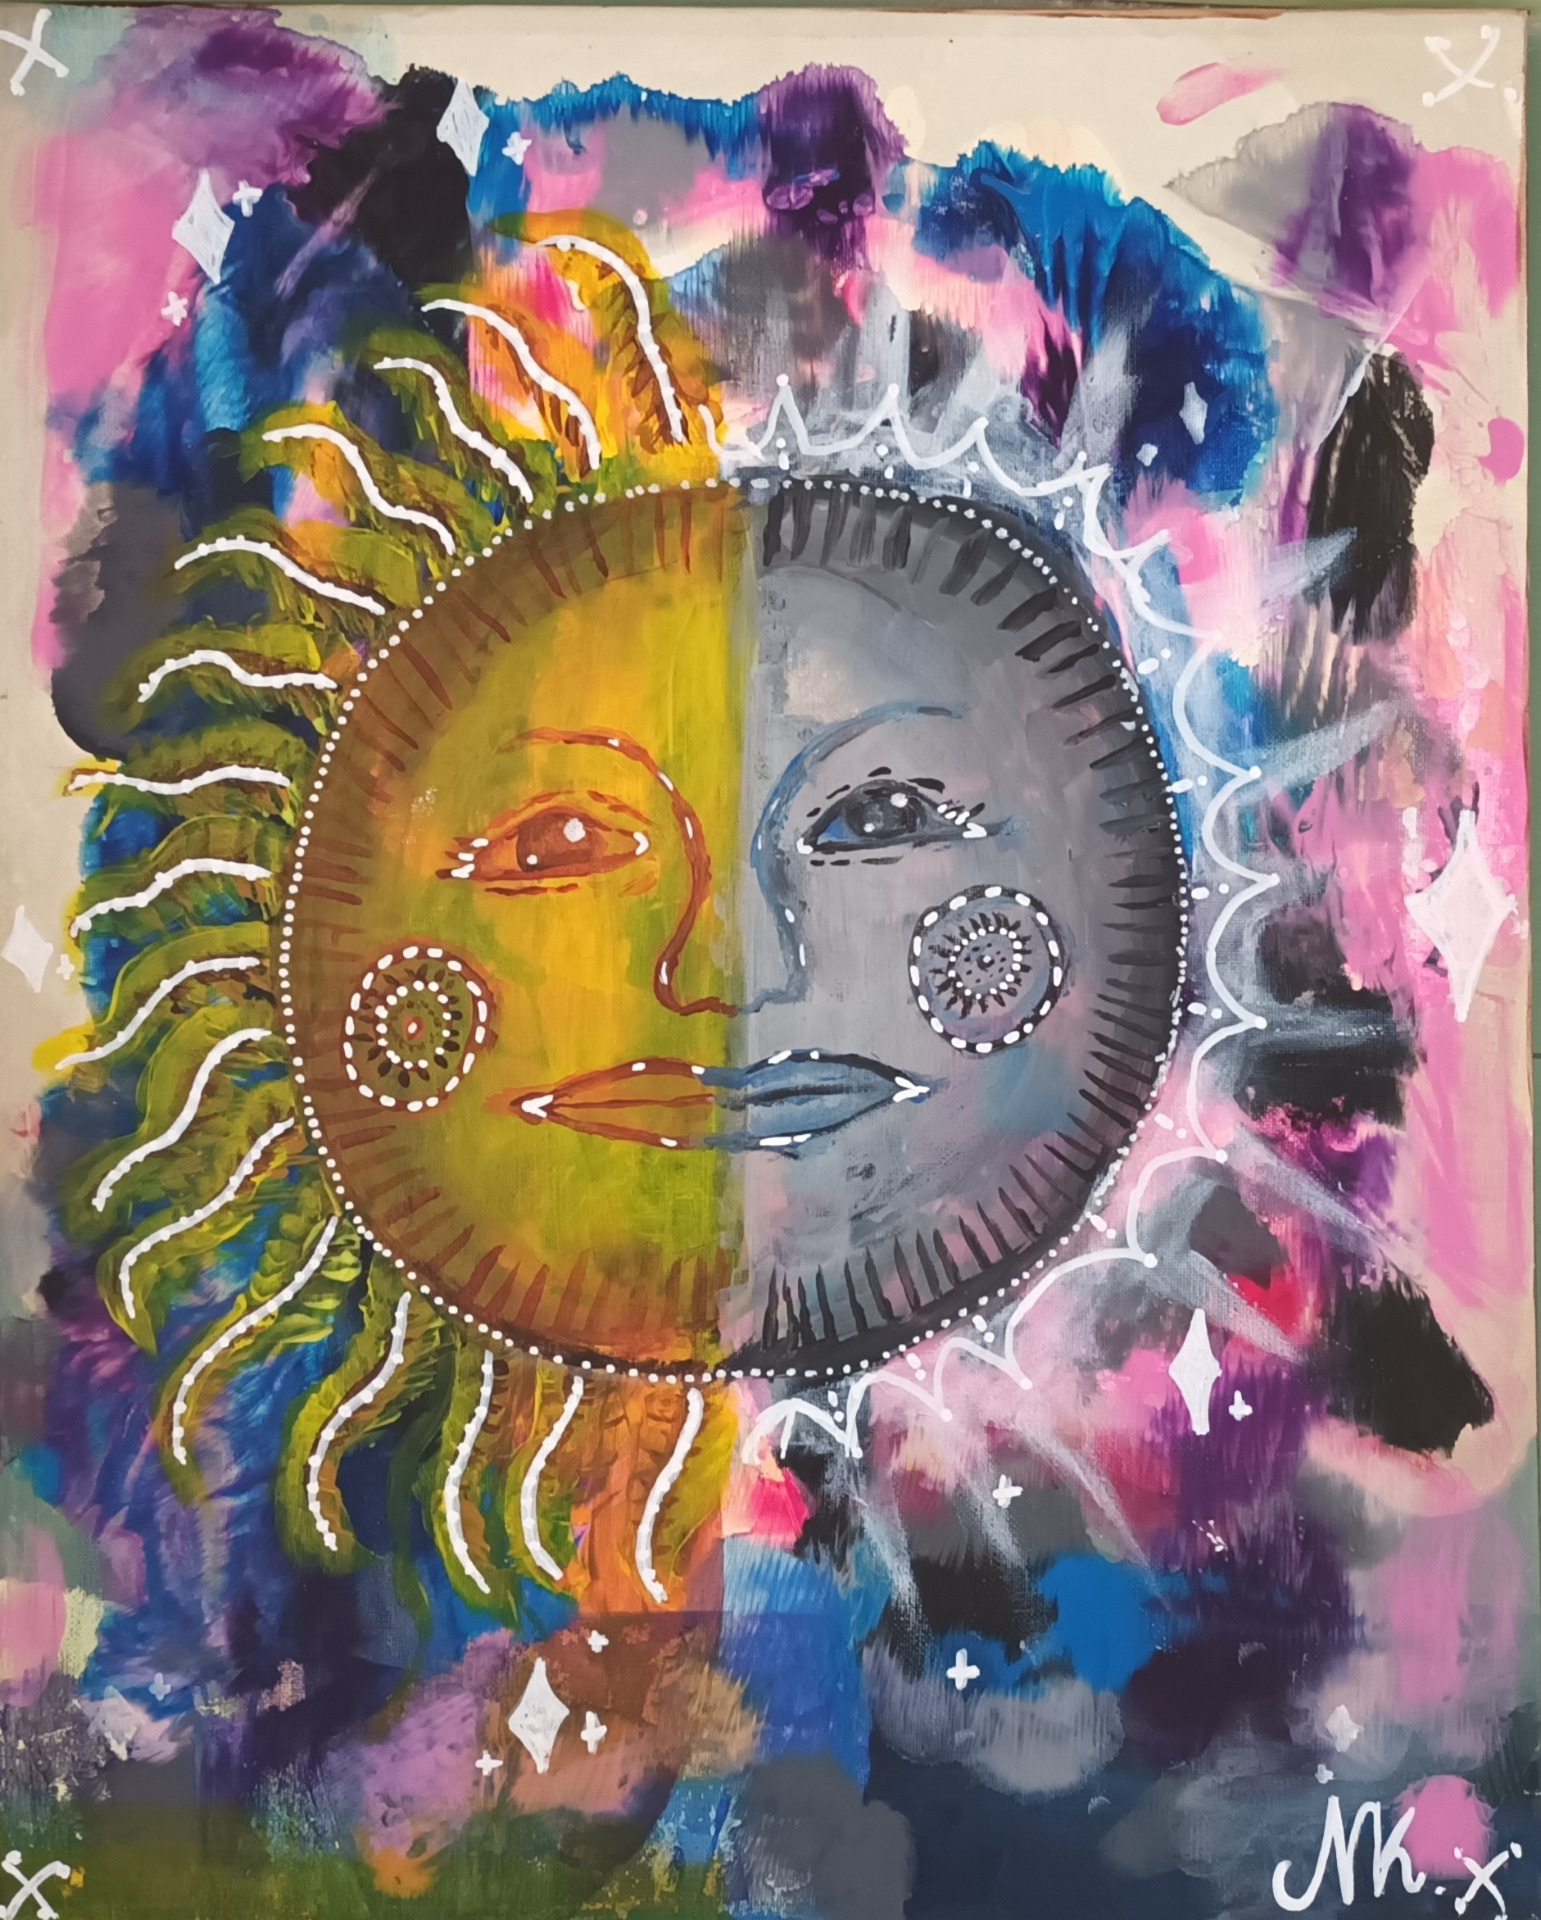 Praca miesiąca Październik 2022- autor Natasza Kosiorek 5d, rozświetlone słońce o 2 twarzach na kolorowym tle.jpg